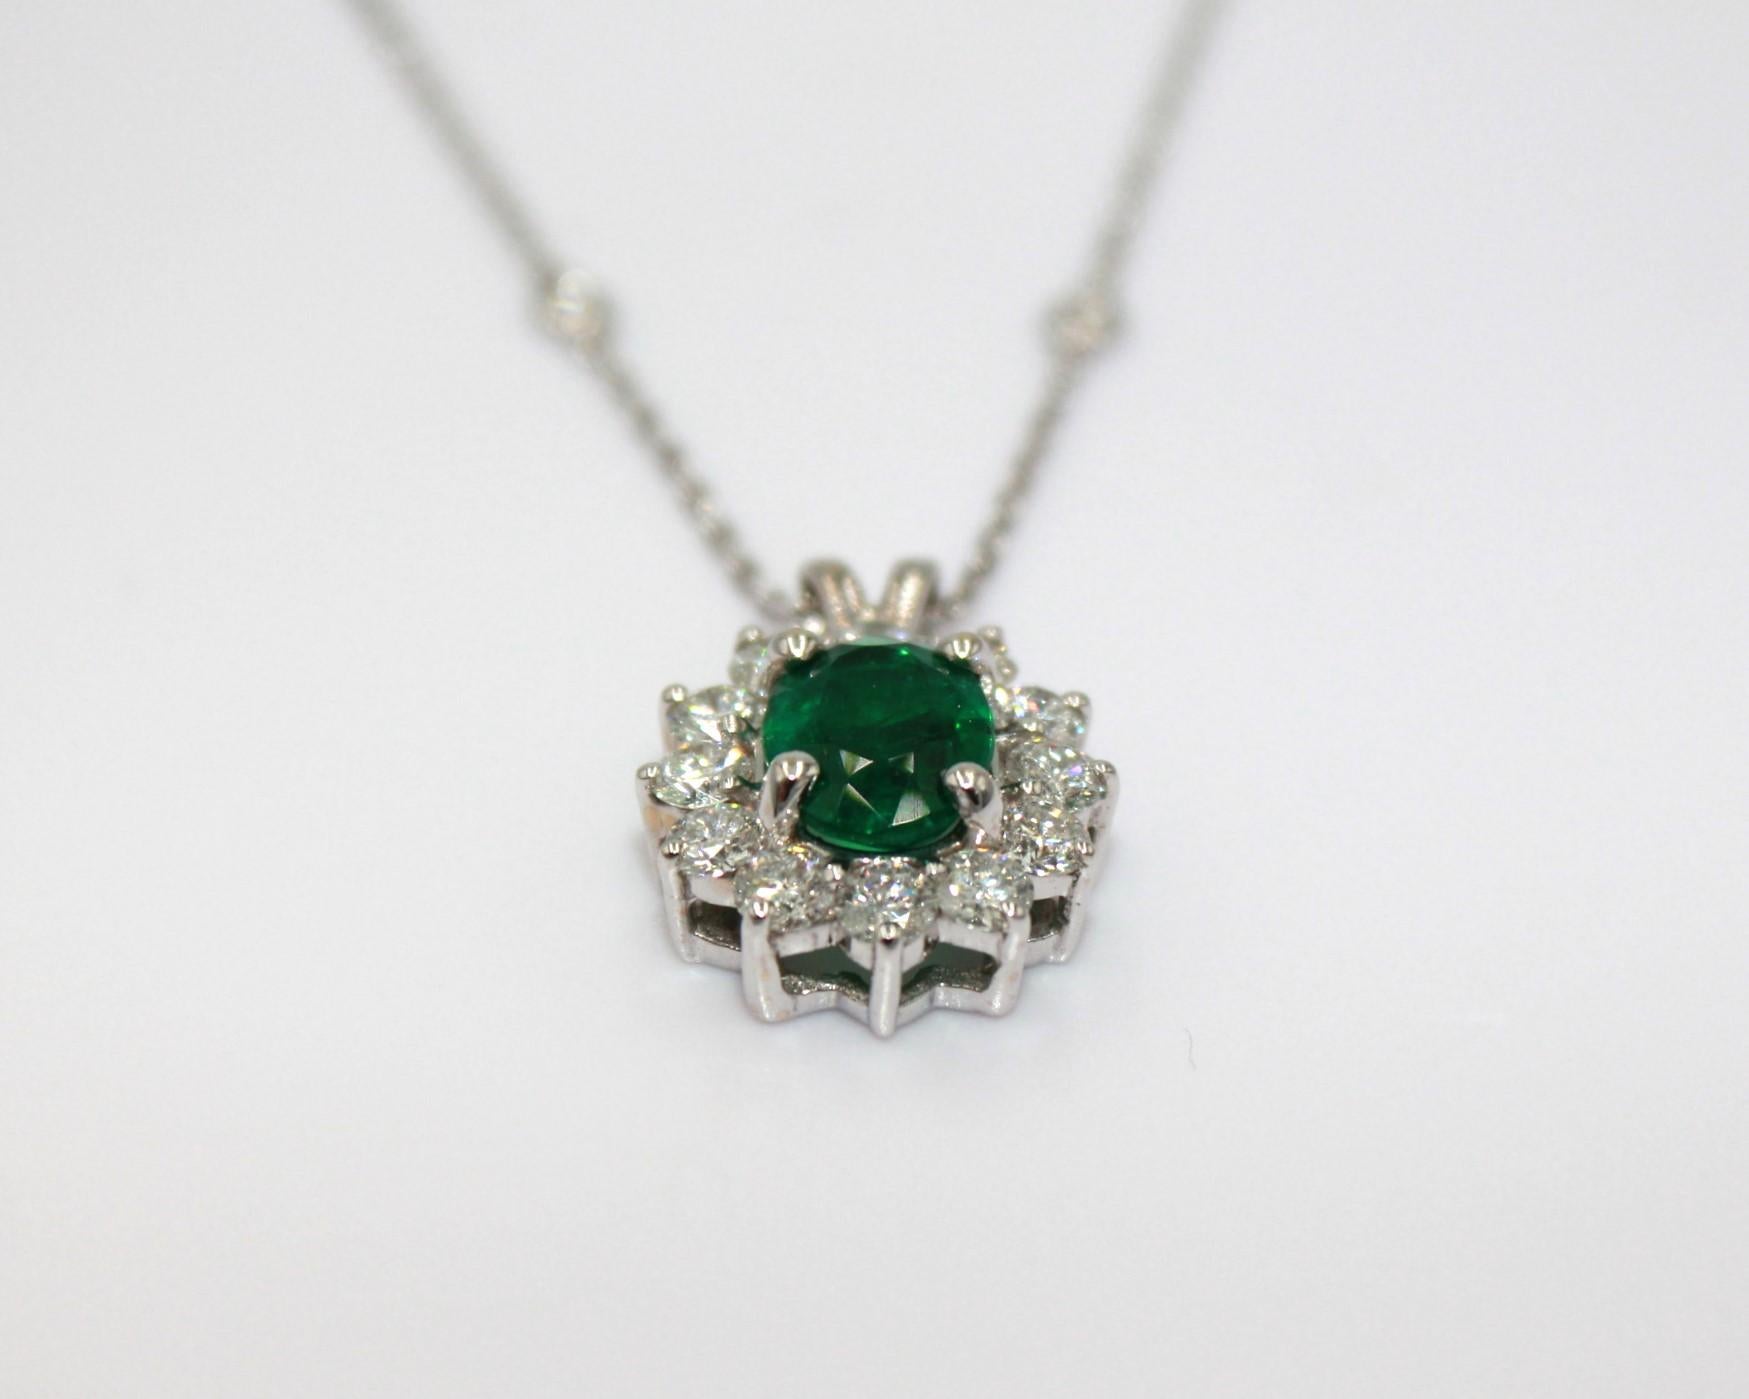 Ovaler sambischer Smaragd von 2,07 Karat, umrahmt von 12 runden Diamanten mit Zeiger 12,0, mit einem Gesamtgewicht von 1,44 Karat. 

Dieser atemberaubende Smaragd-Diamant-Anhänger wird Ihre Eleganz und Einzigartigkeit unterstreichen.